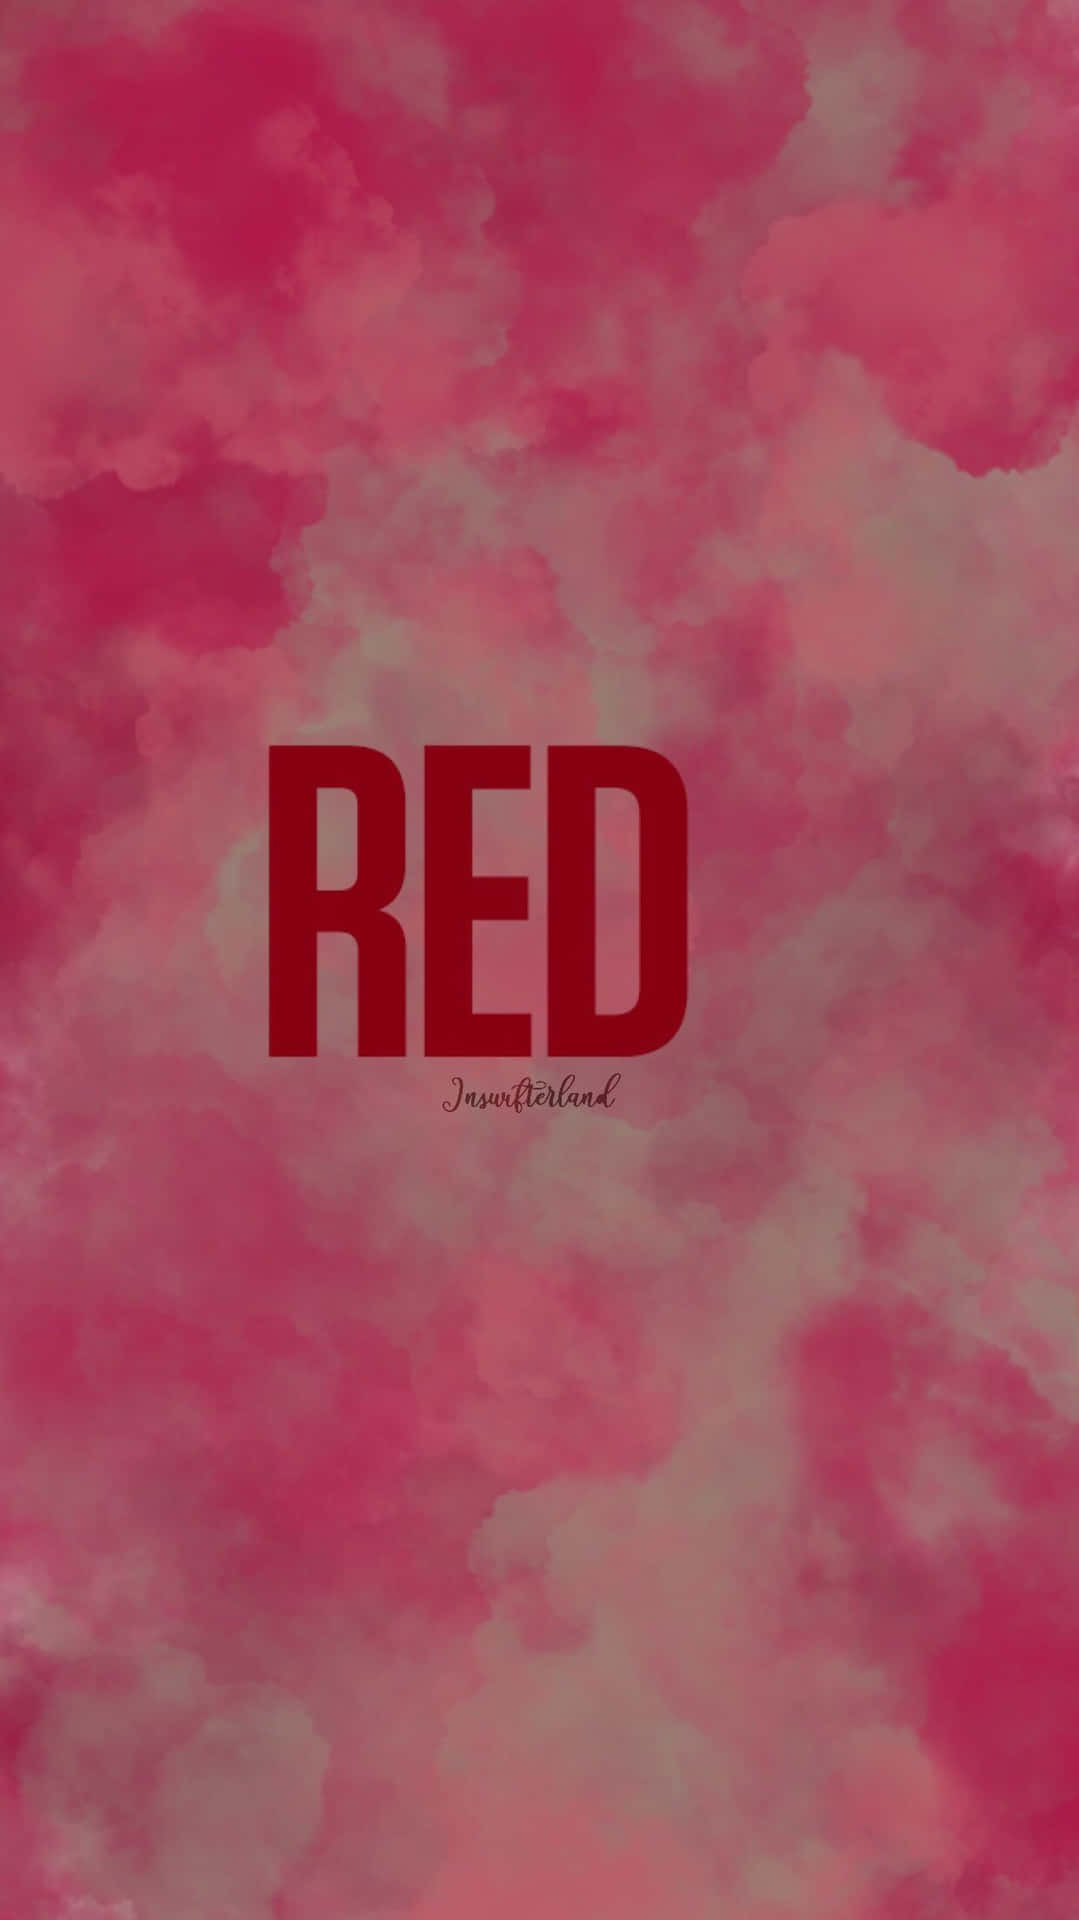 Genießensie Das Neue Album Red Taylor's Version Von Taylor Swift. Wallpaper